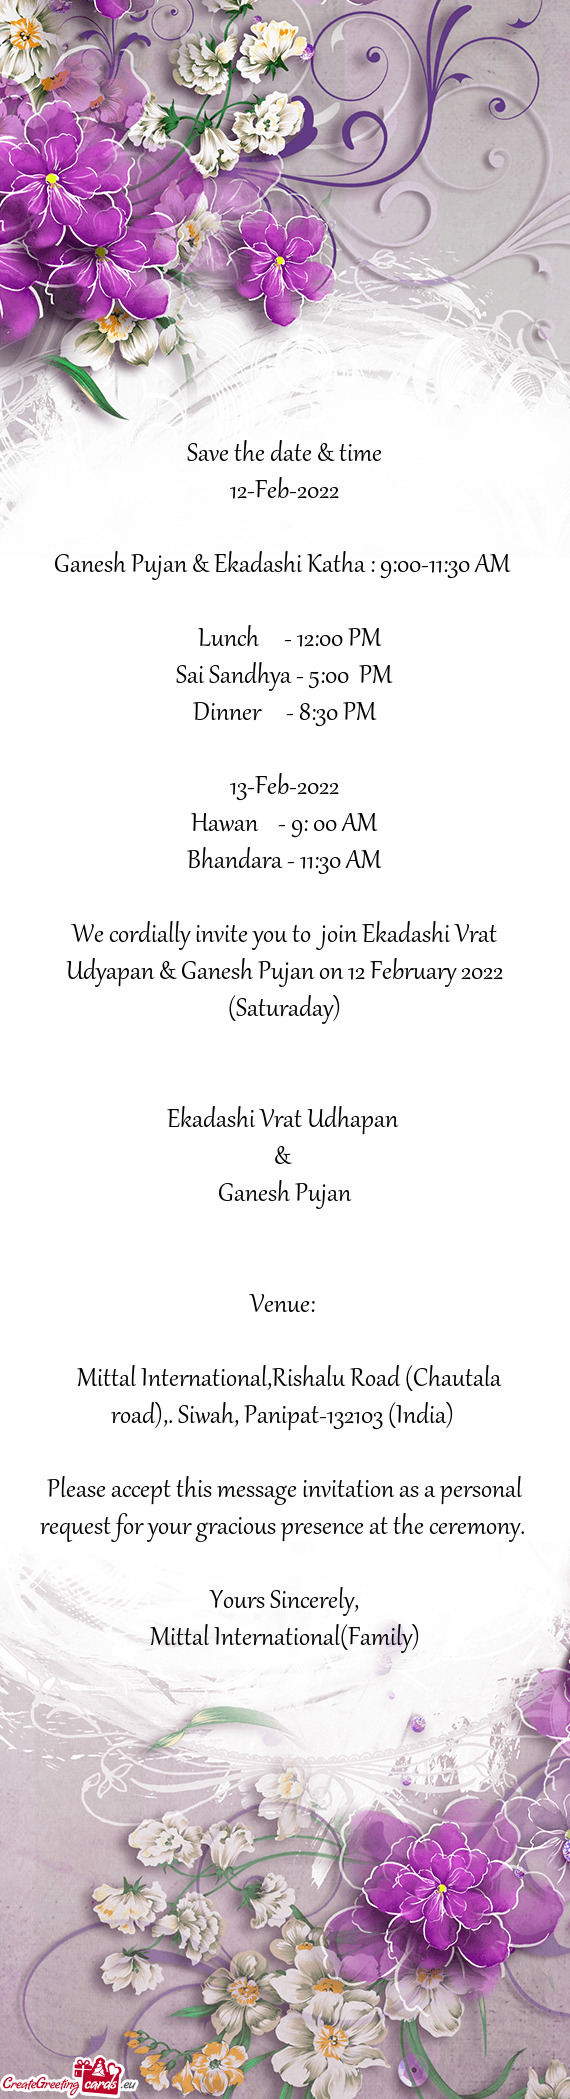 Ganesh Pujan & Ekadashi Katha : 9:00-11:30 AM